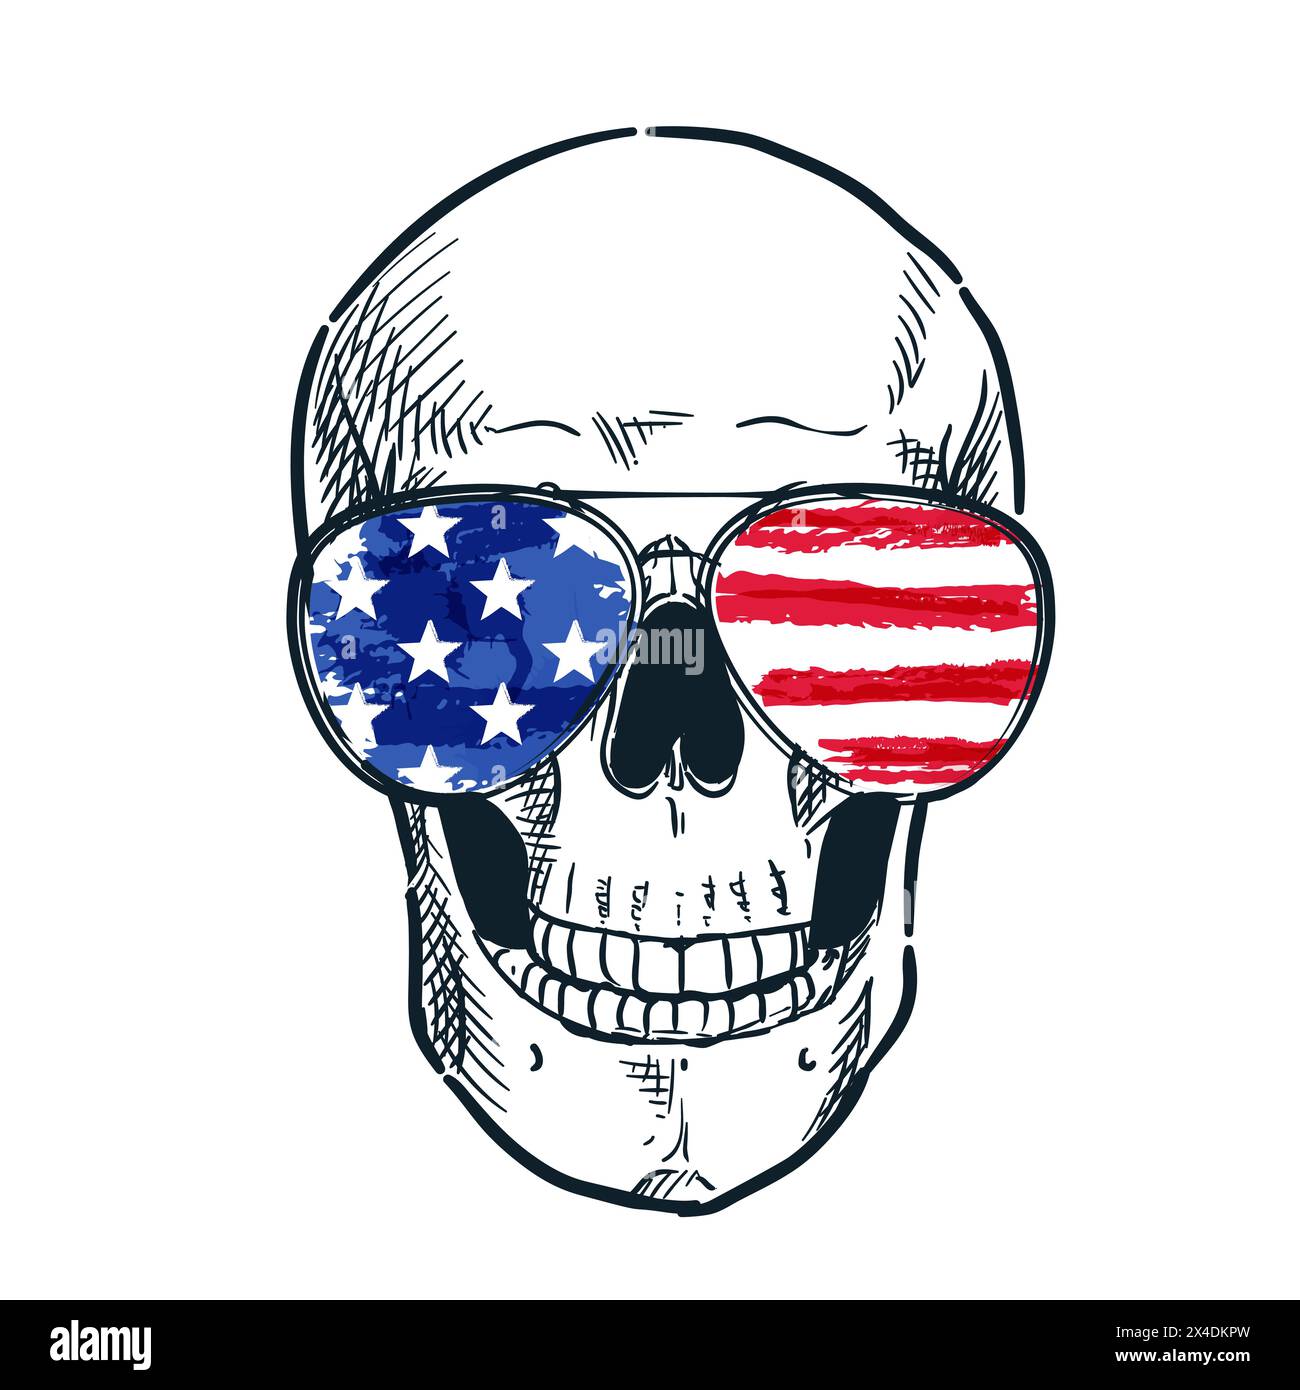 Schädel in den USA Flagge Brillen Hand gezeichnet Aquarell Skizze Illustration isoliert auf weißem Hintergrund. Weihnachtsgrafik, Banner, Poster, Grußkarte Stock Vektor